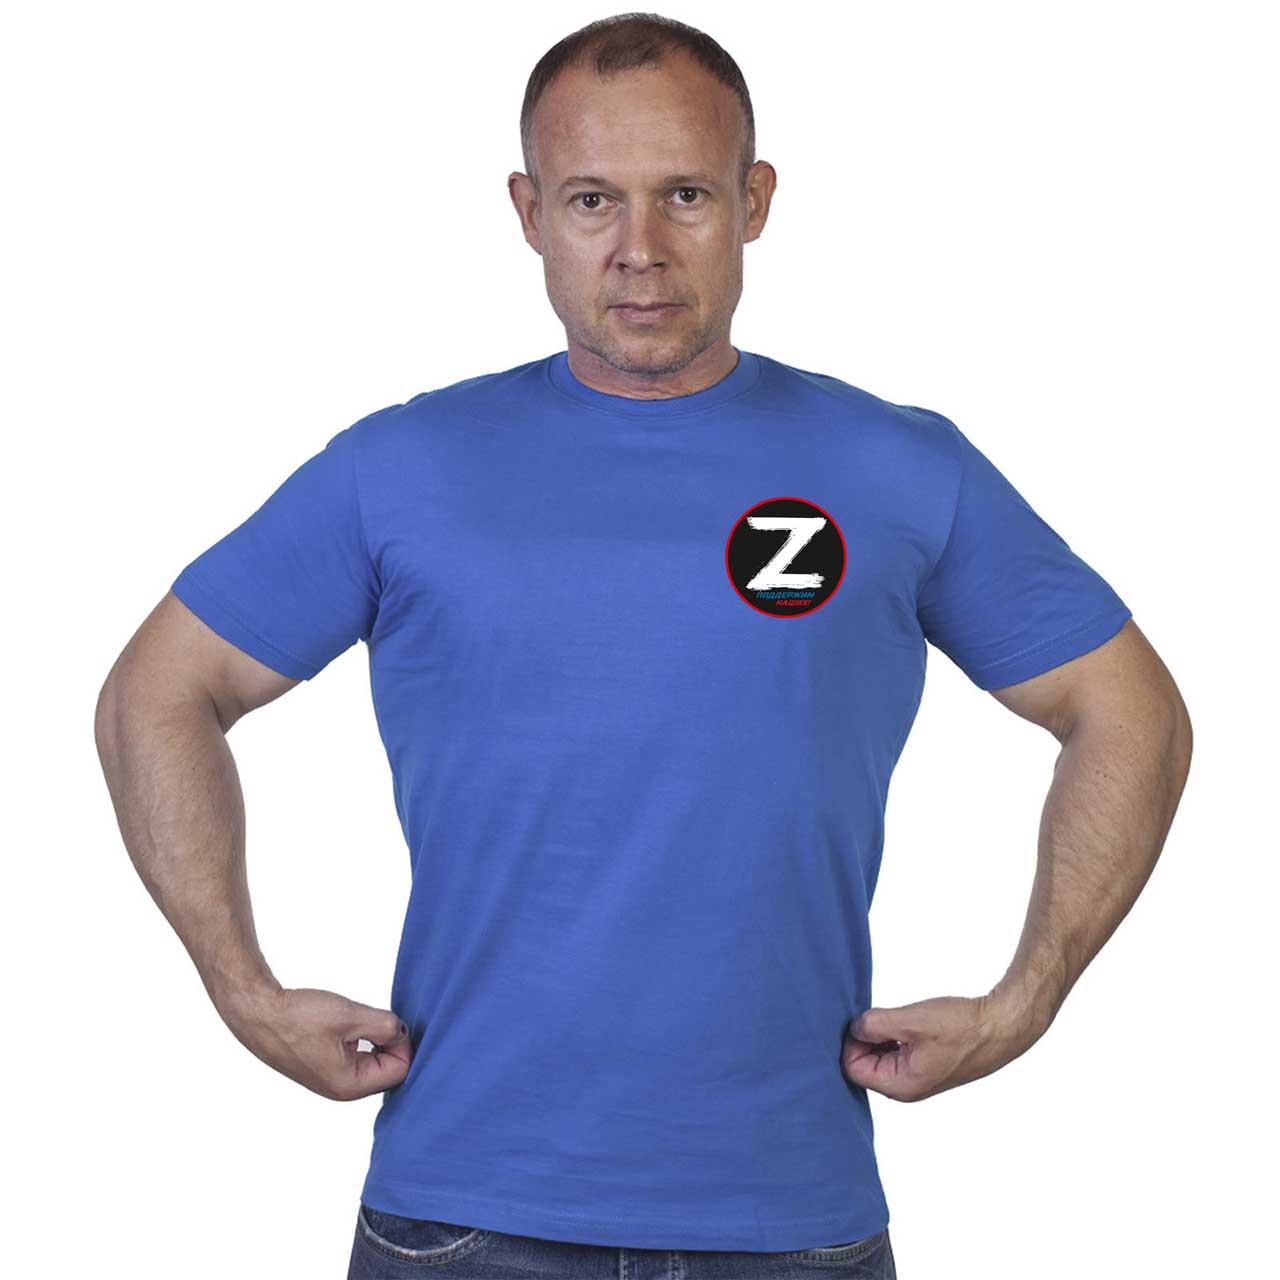 Васильковая футболка с термотрансфером символ «Z» – поддержим наших!